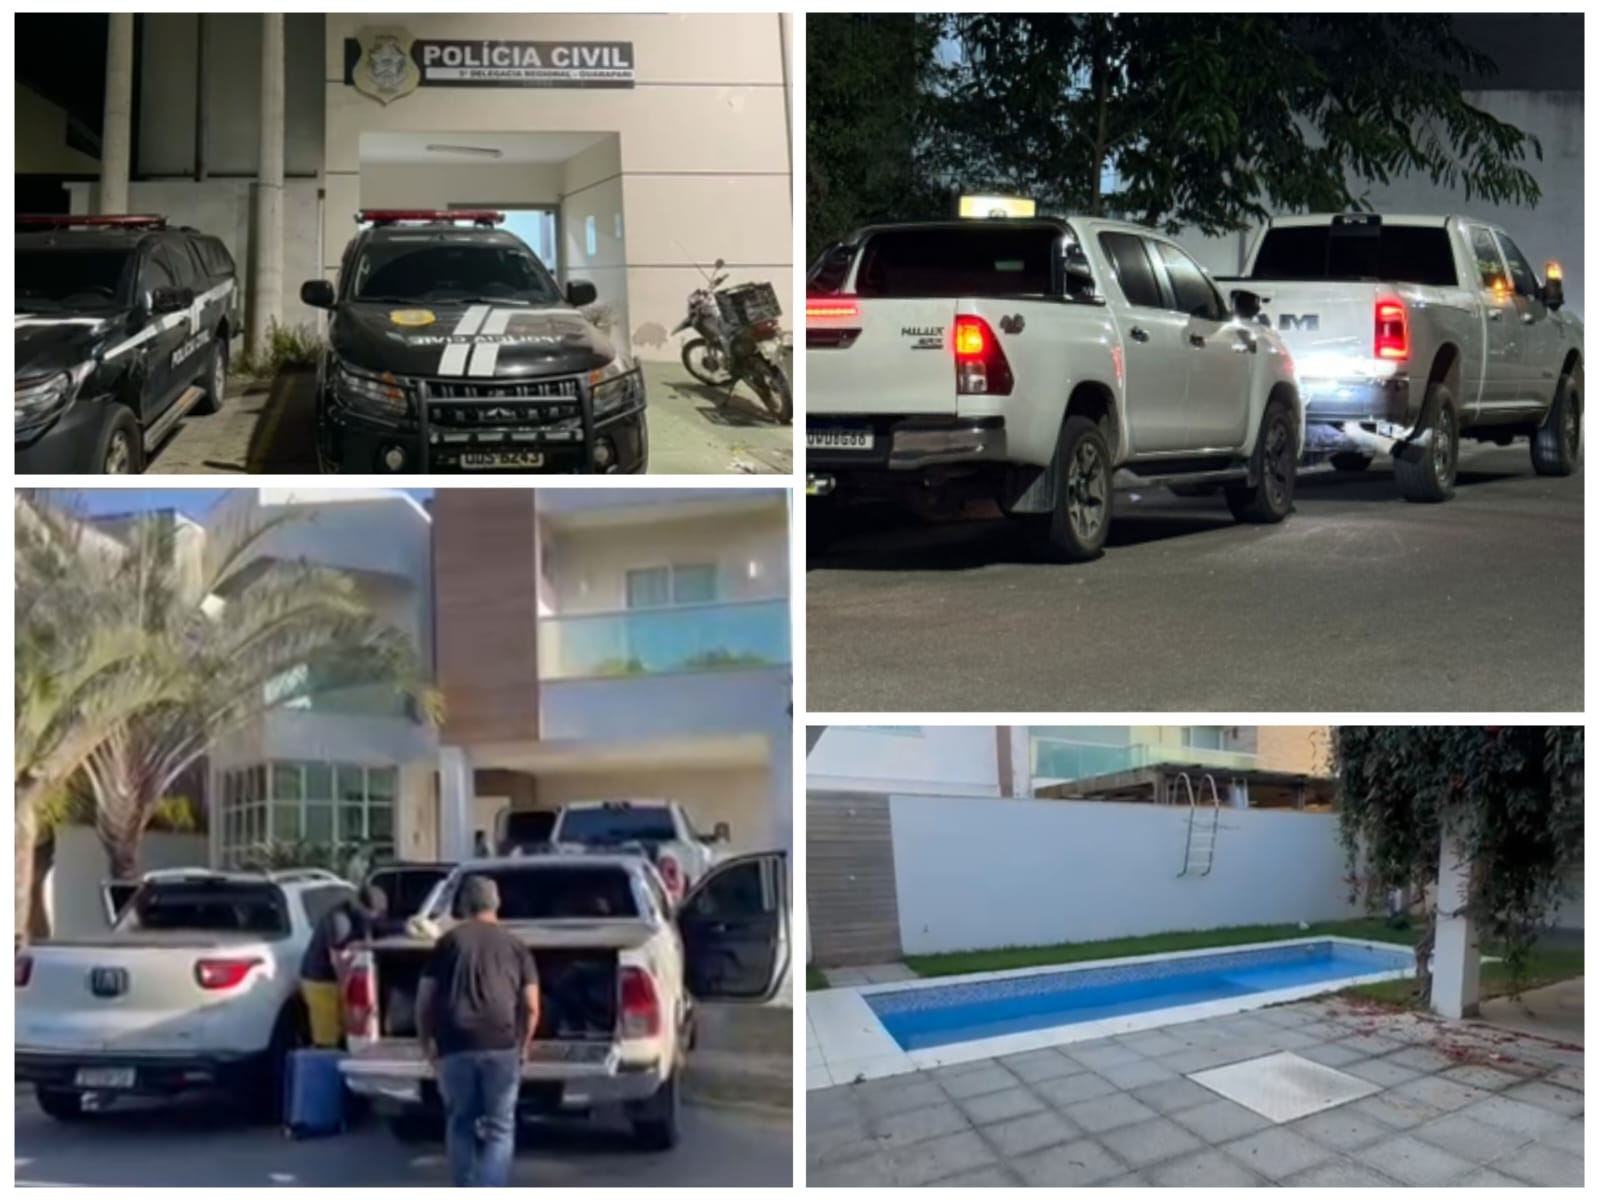 Os policiais arrecadaram três veículos de luxo, com valor estimado em mais de R$ 1 milhão